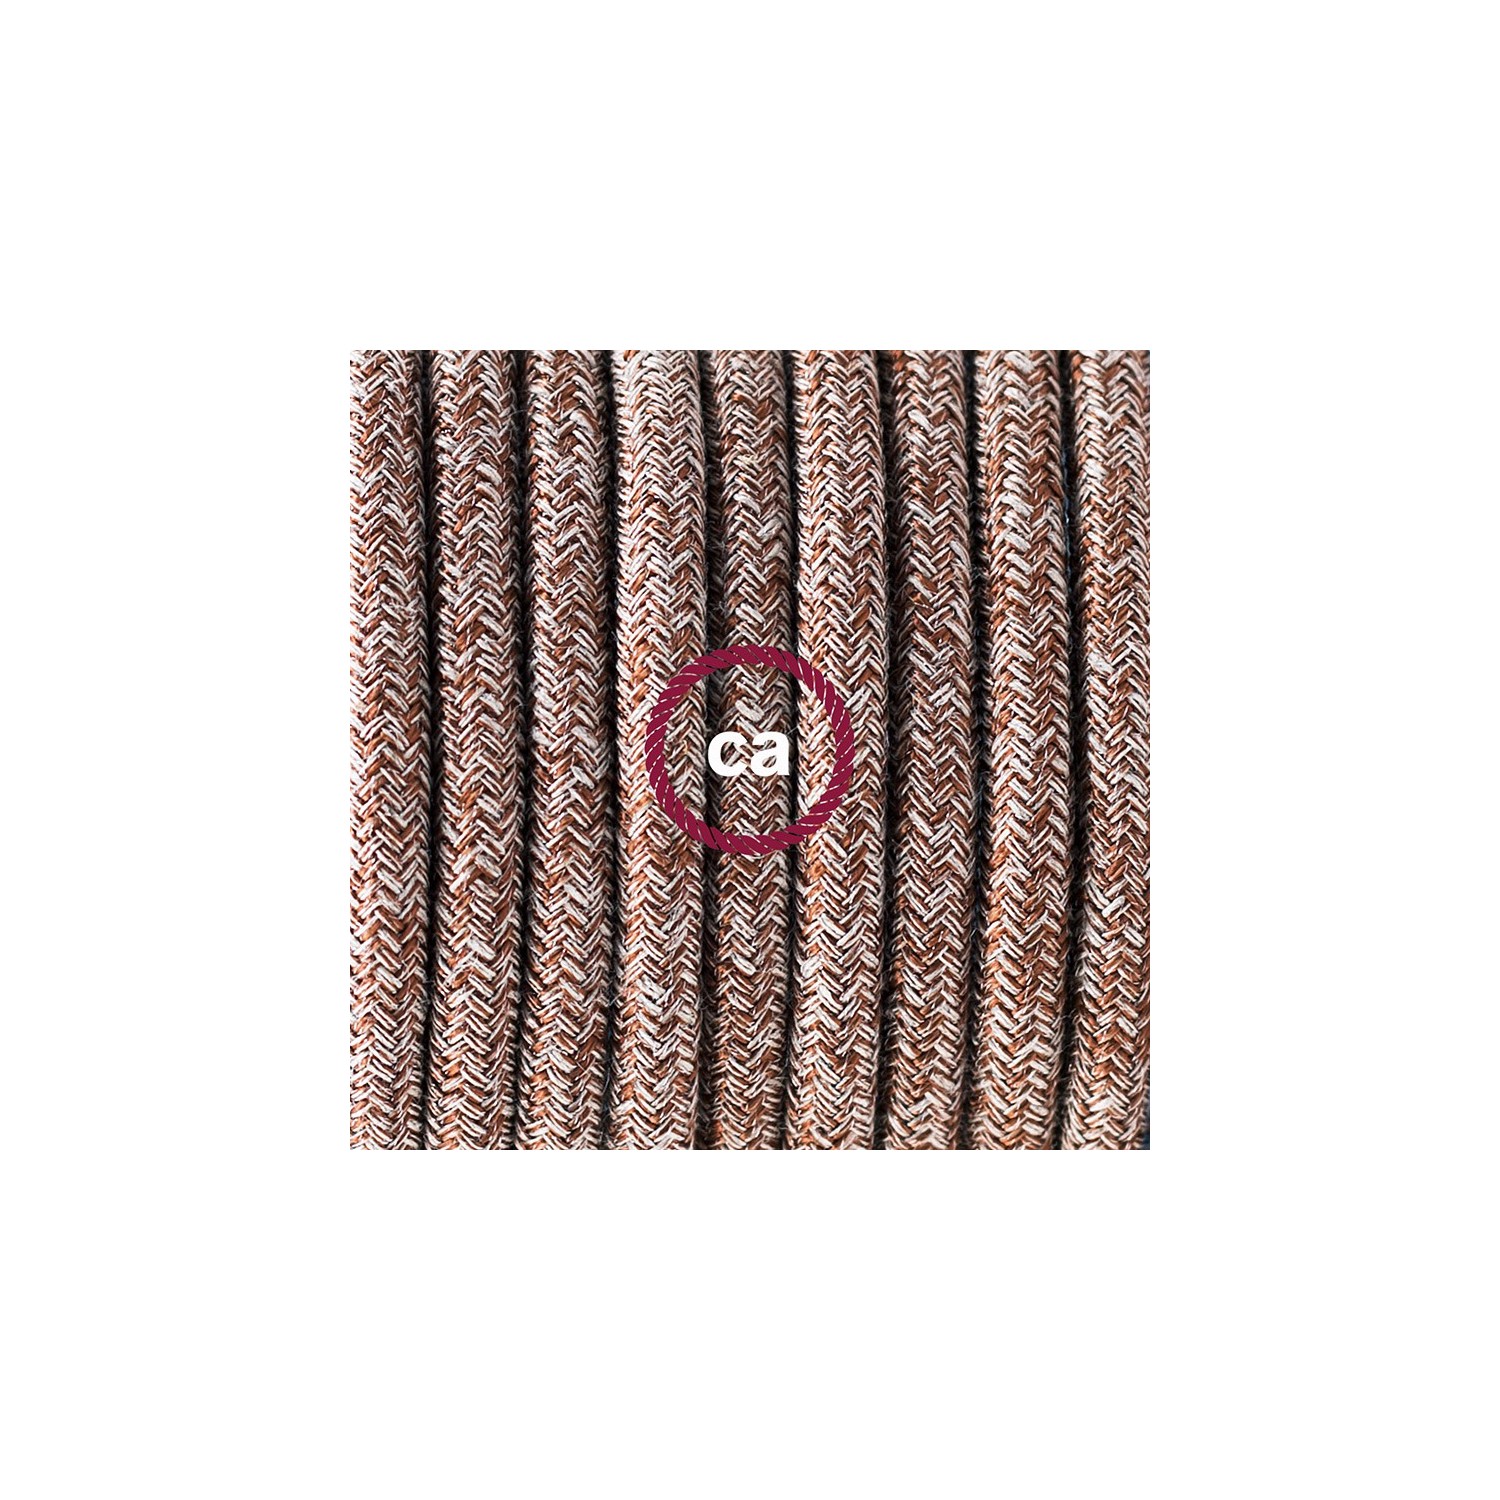 Ronde flexibele textielkabel van katoen met schakelaar en stekker. RS82 - bruin tweed. natuurlijk linnen and glitter 1,80 m.